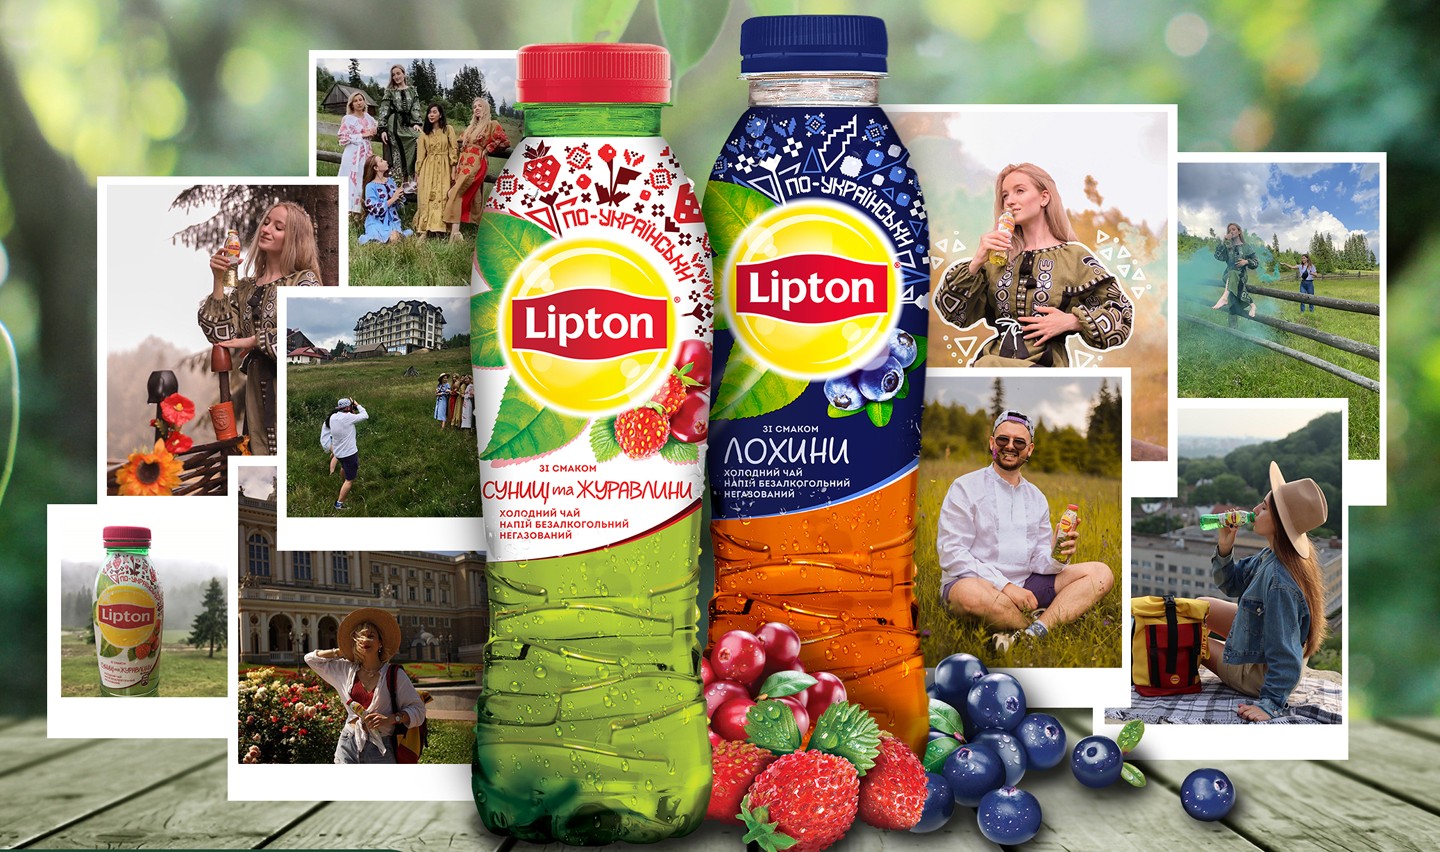 Lipton Advertising image